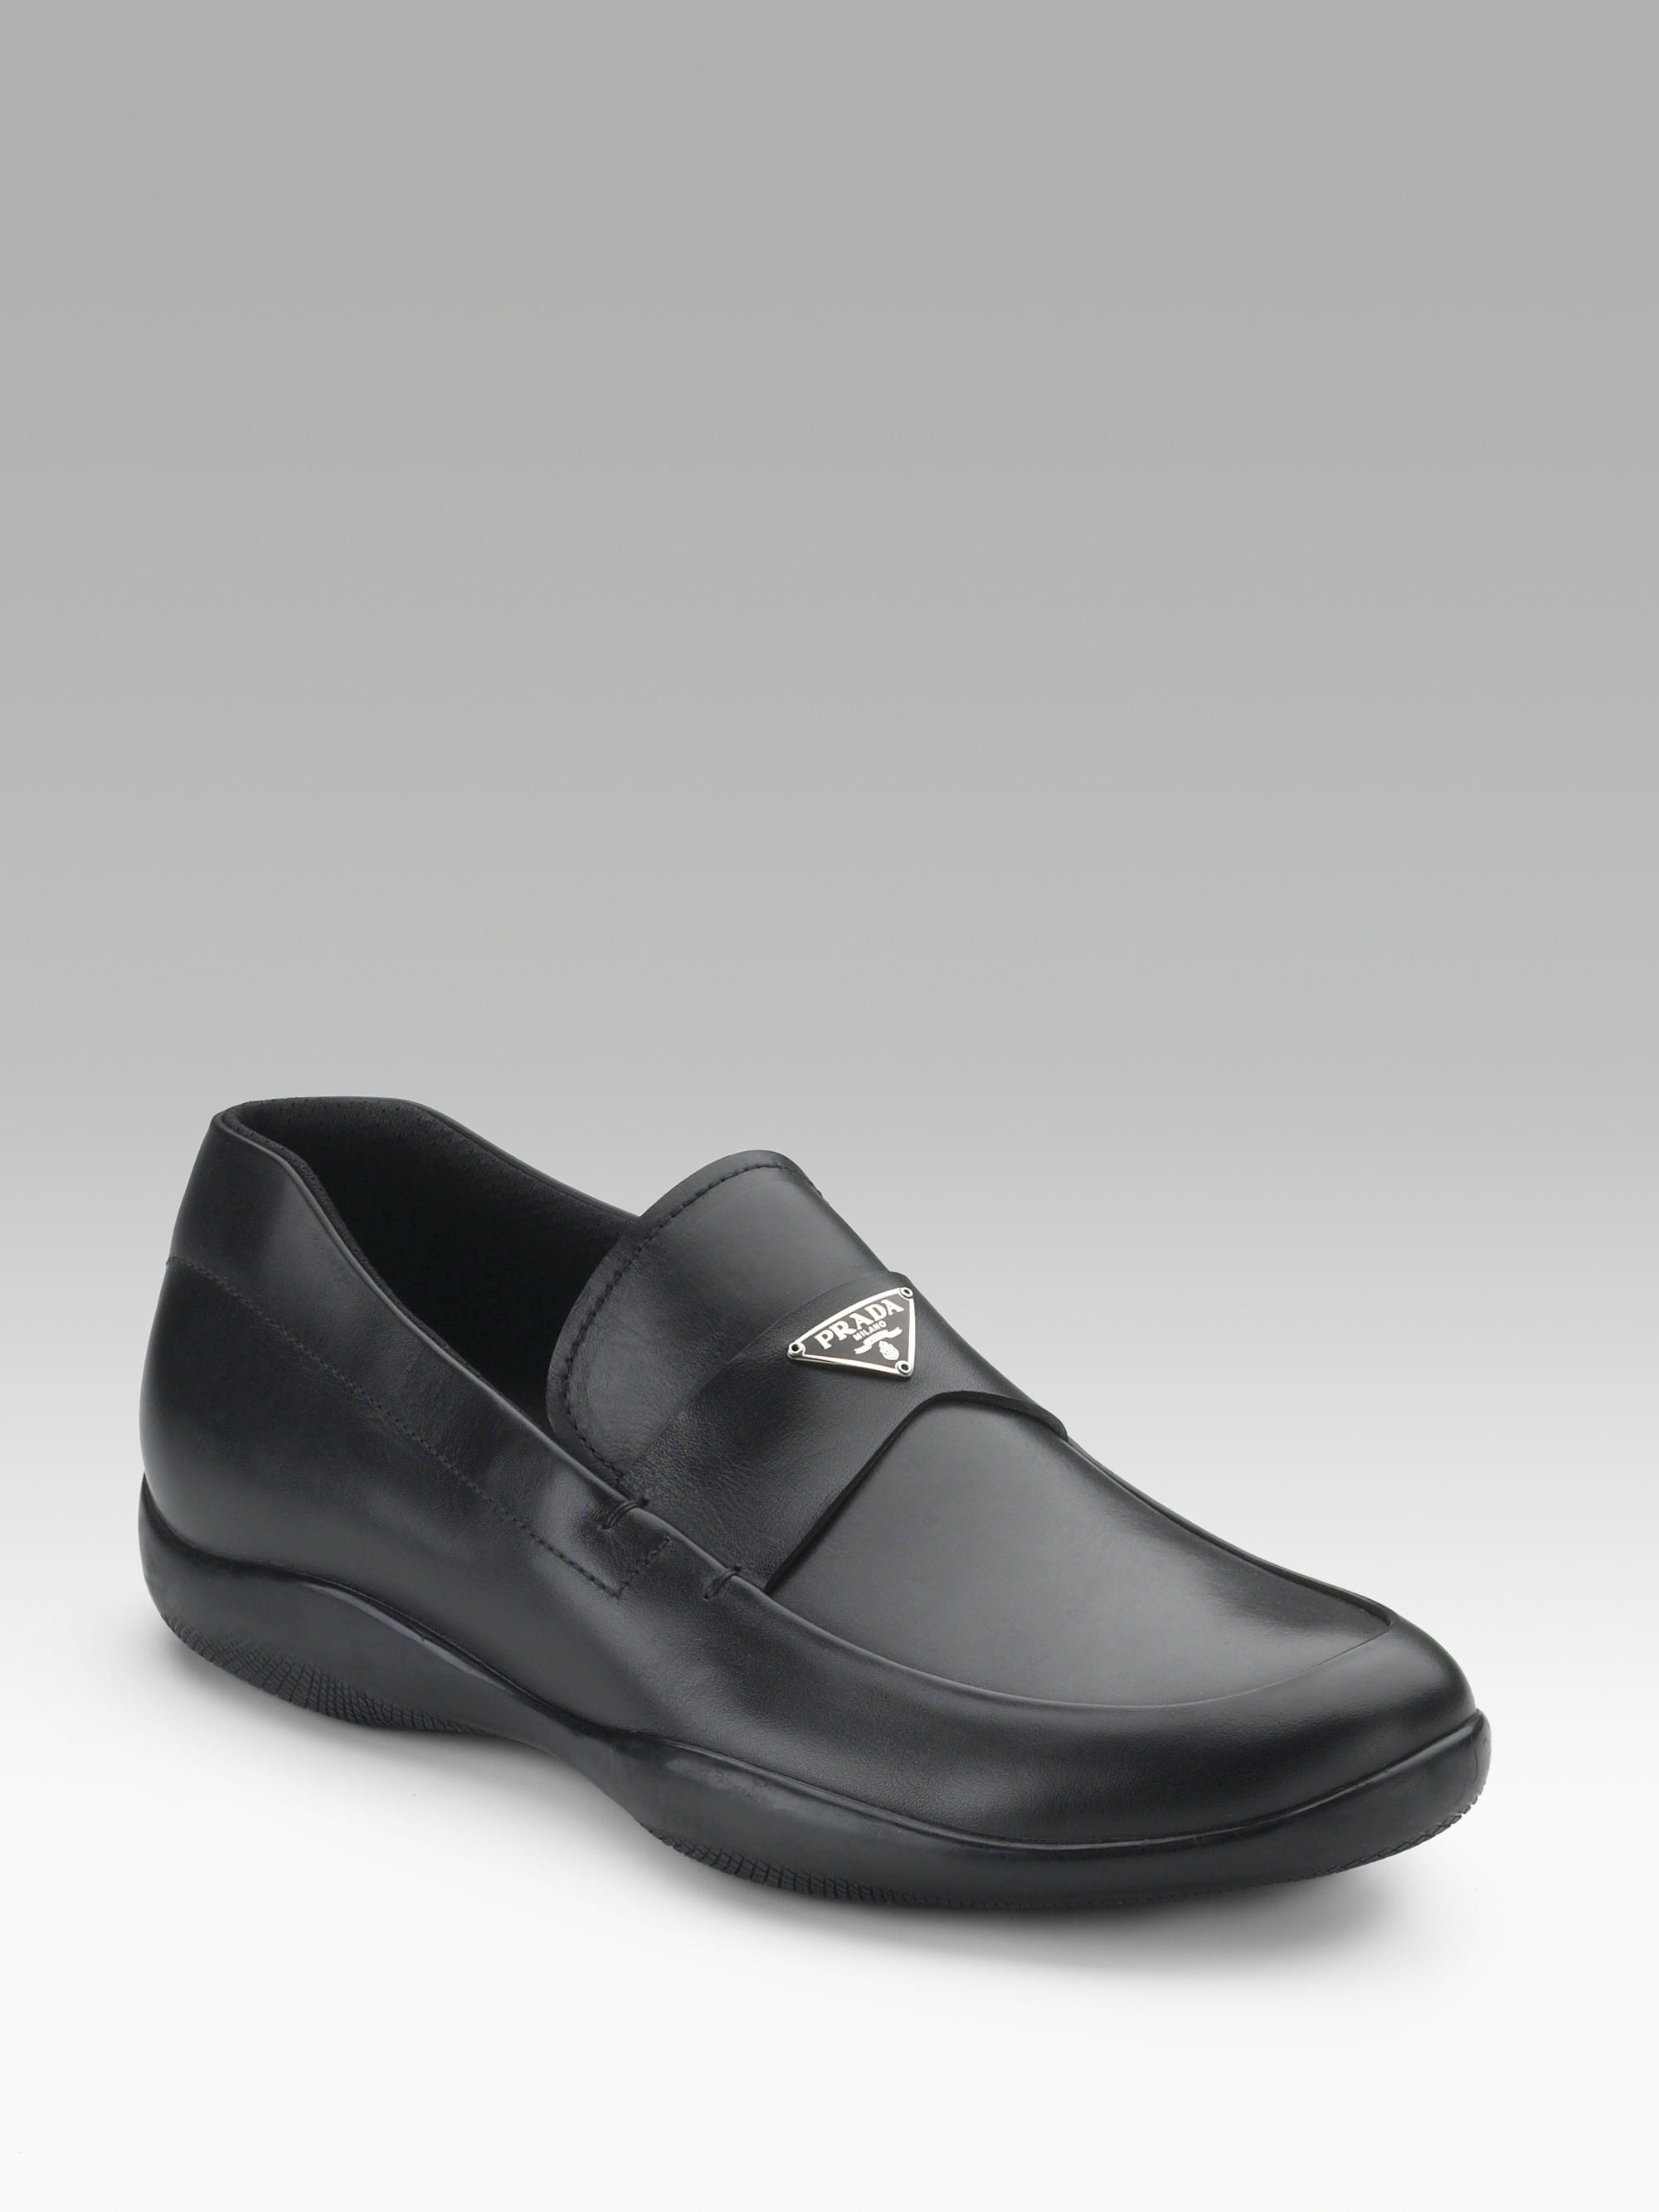 Prada Logo Loafers in Nero (Black) for Men - Lyst